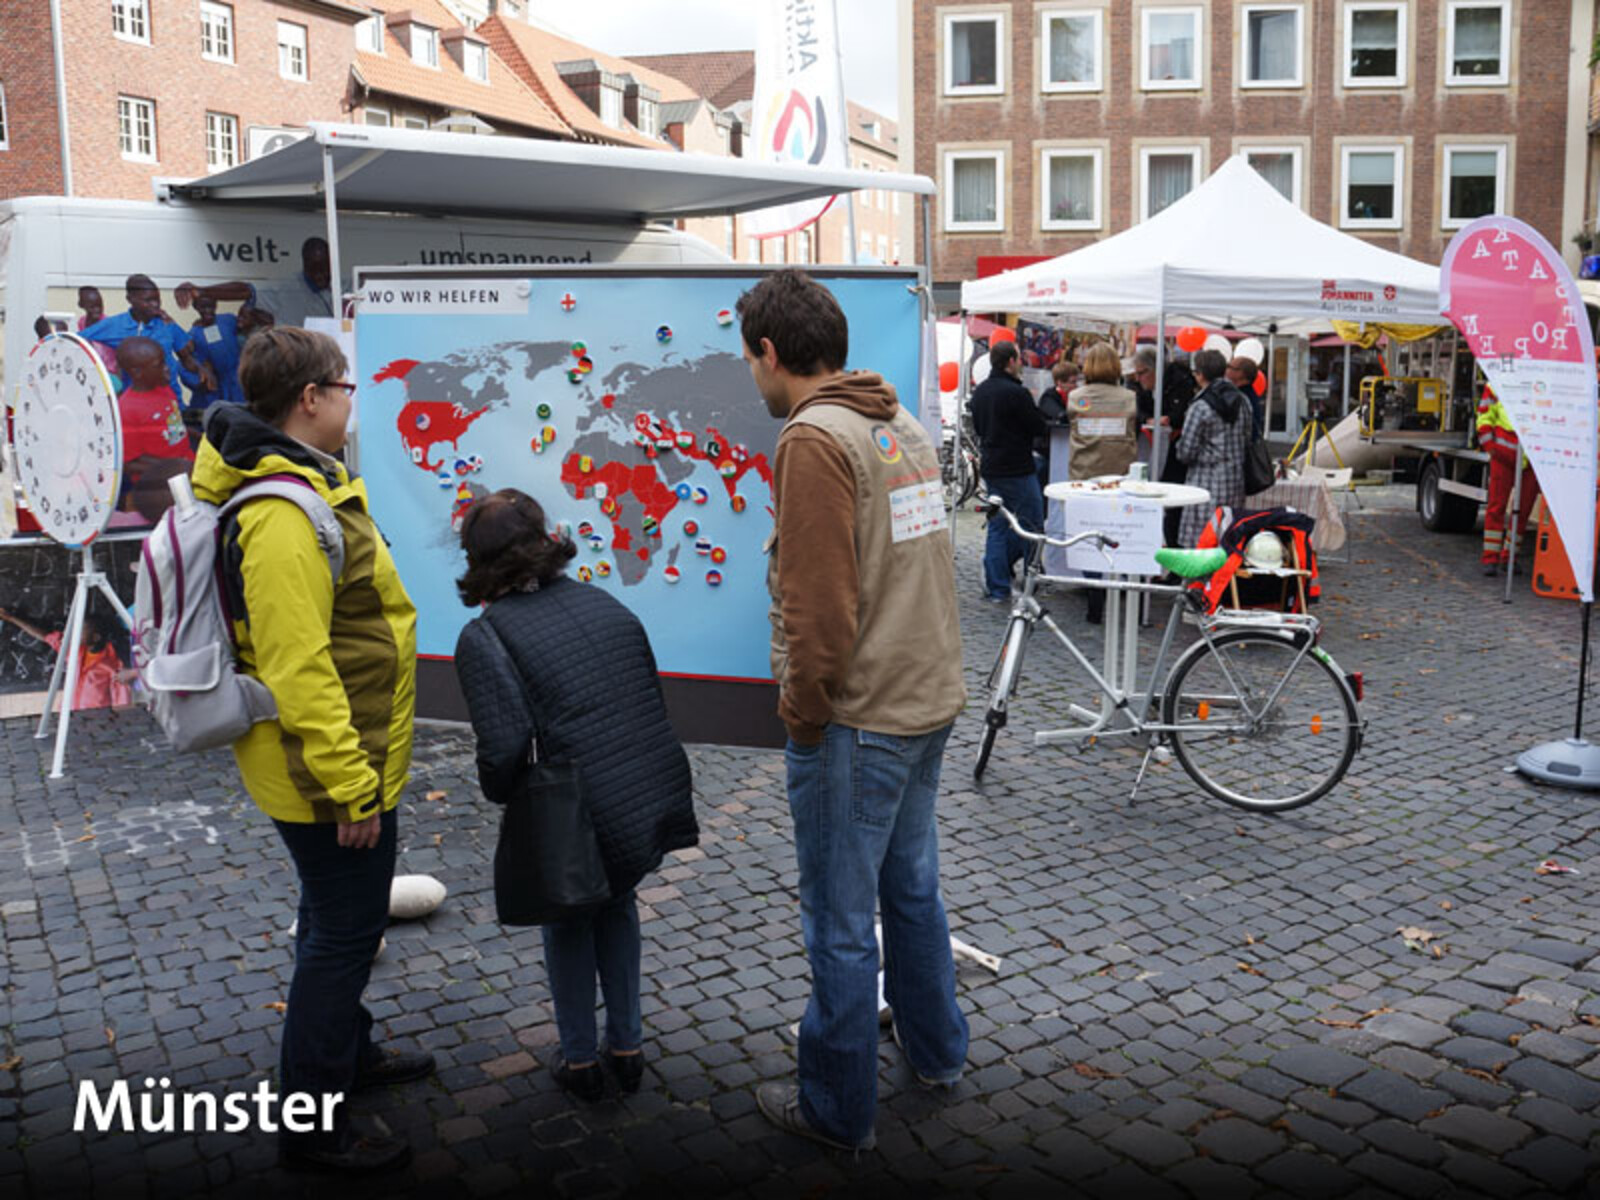 Am vierten Tag der Tour stand unser Mobil auf dem Harsewinkelplatz in der Münsteraner Innenstadt